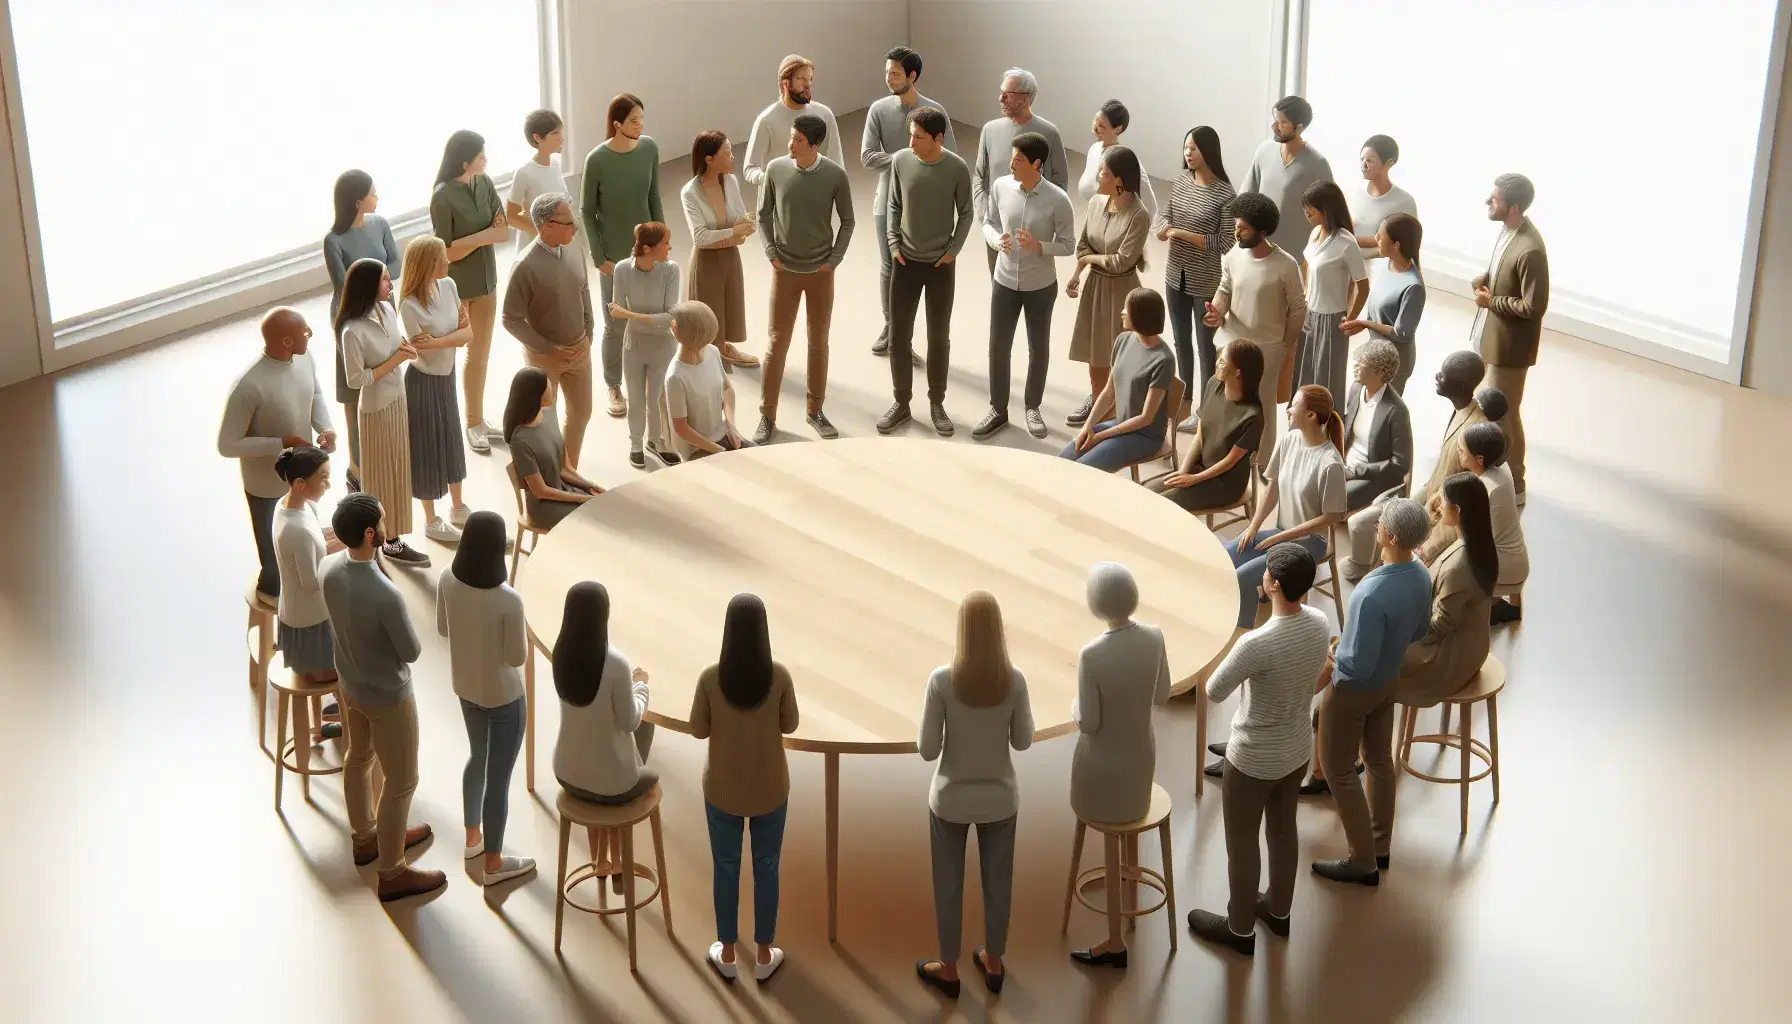 Grupo diverso de personas en animada discusión alrededor de una mesa redonda en una sala iluminada naturalmente, reflejando intercambio de ideas y diversidad.